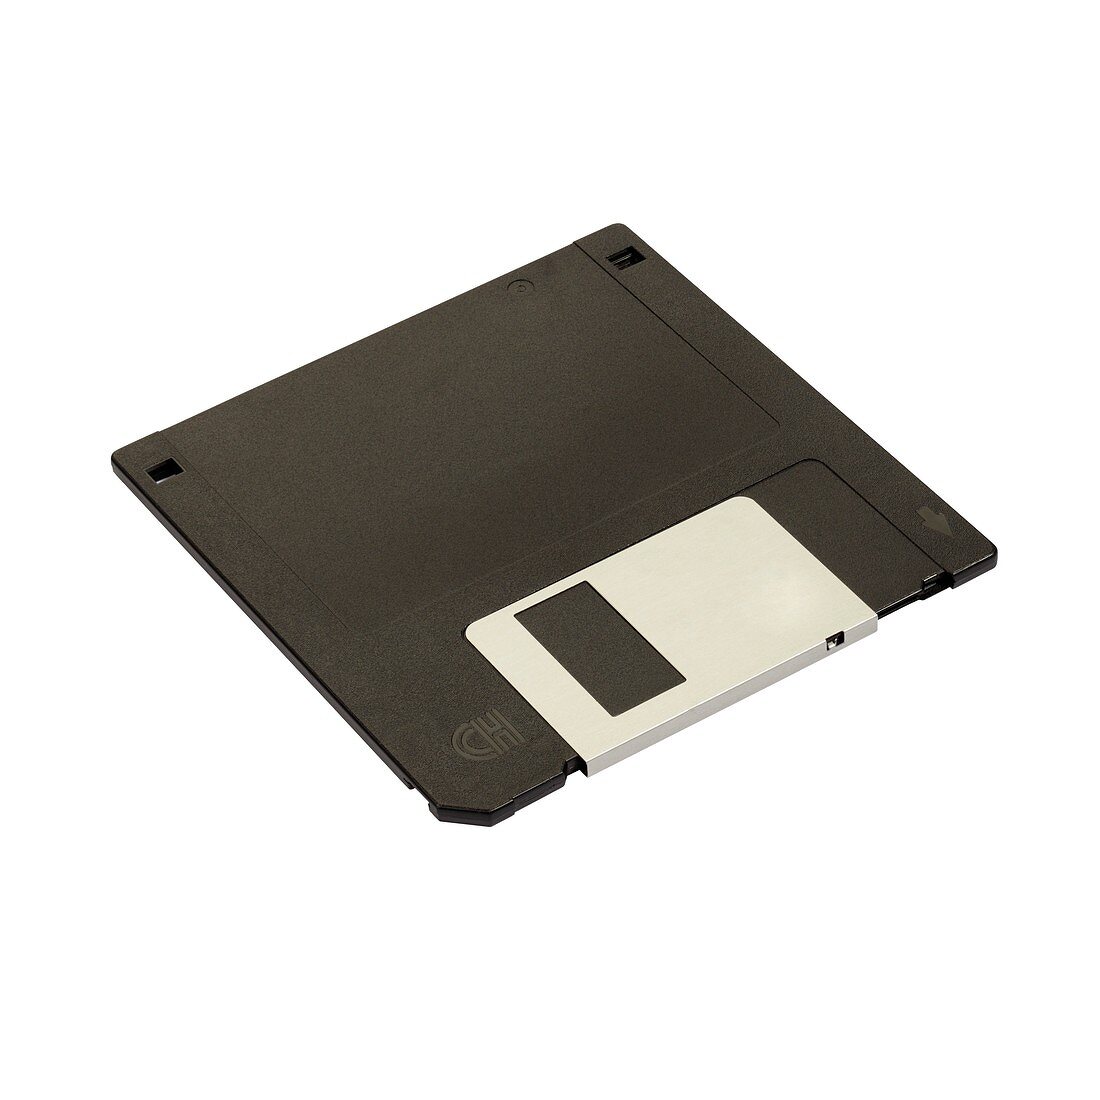 Floppy discs (3.5ins)